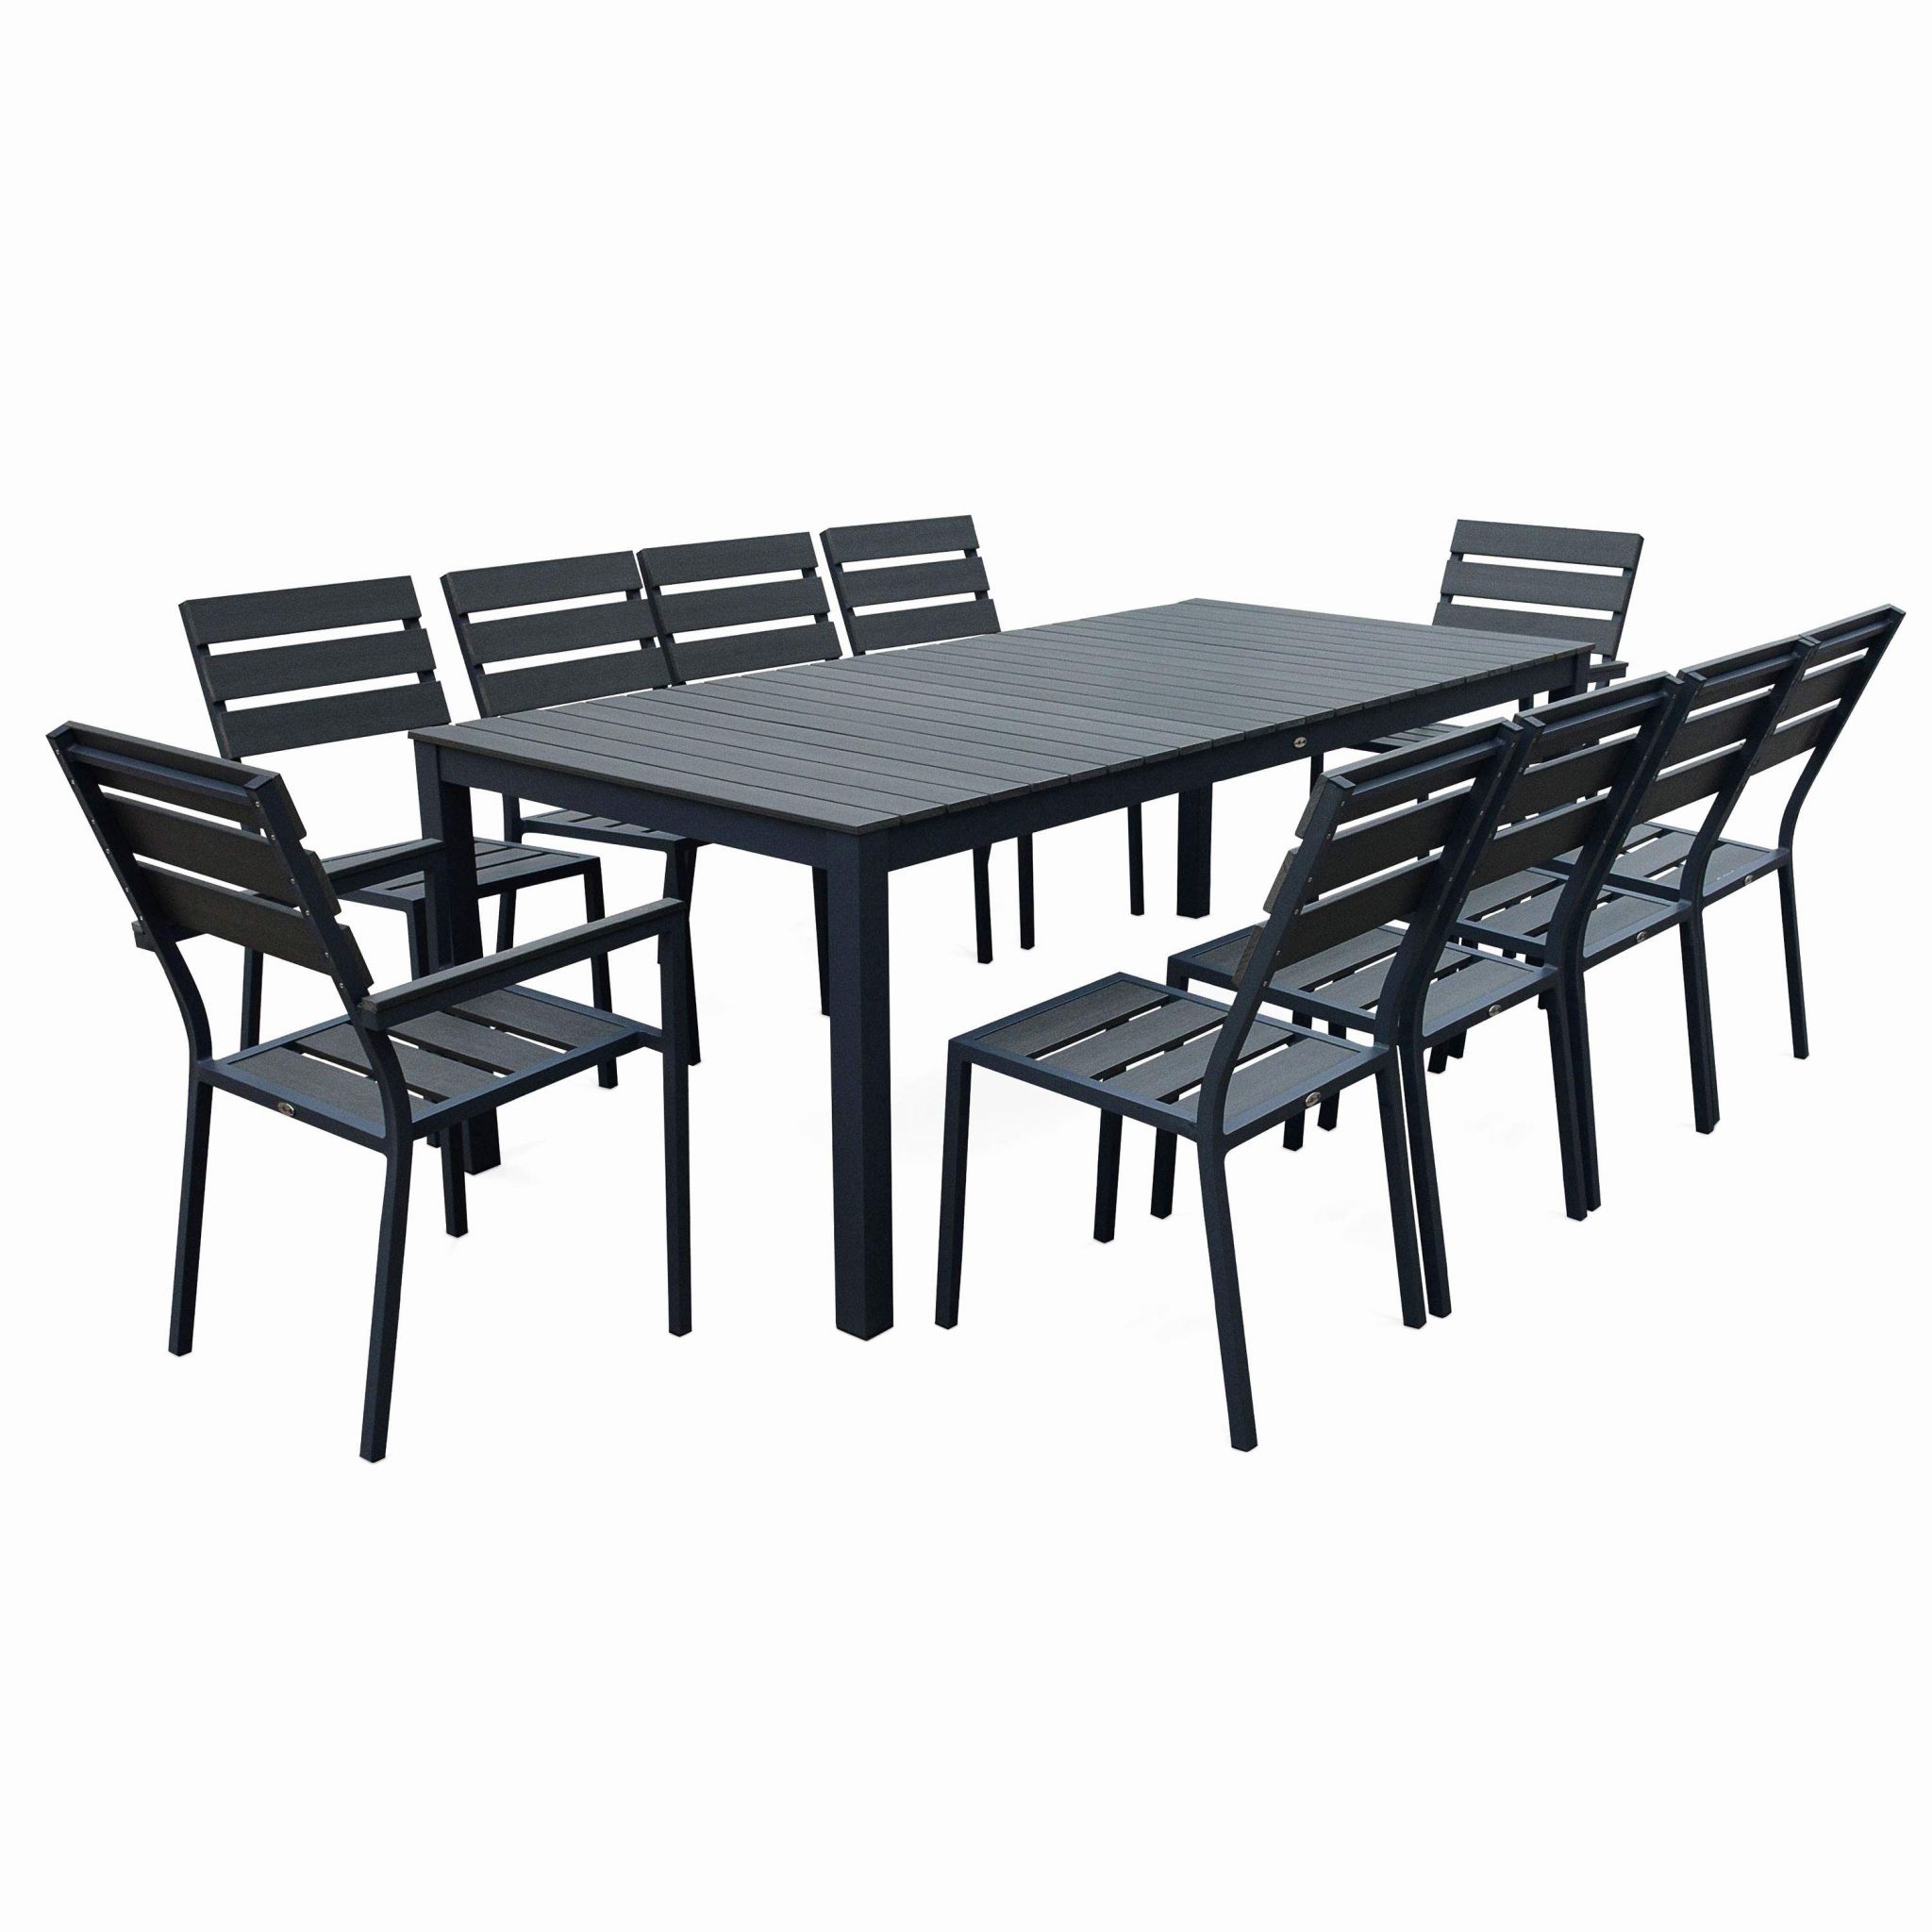 tables de jardin castorama et table de jardin avec rallonge table jardin chaises protege chaise 0d de tables de jardin castorama